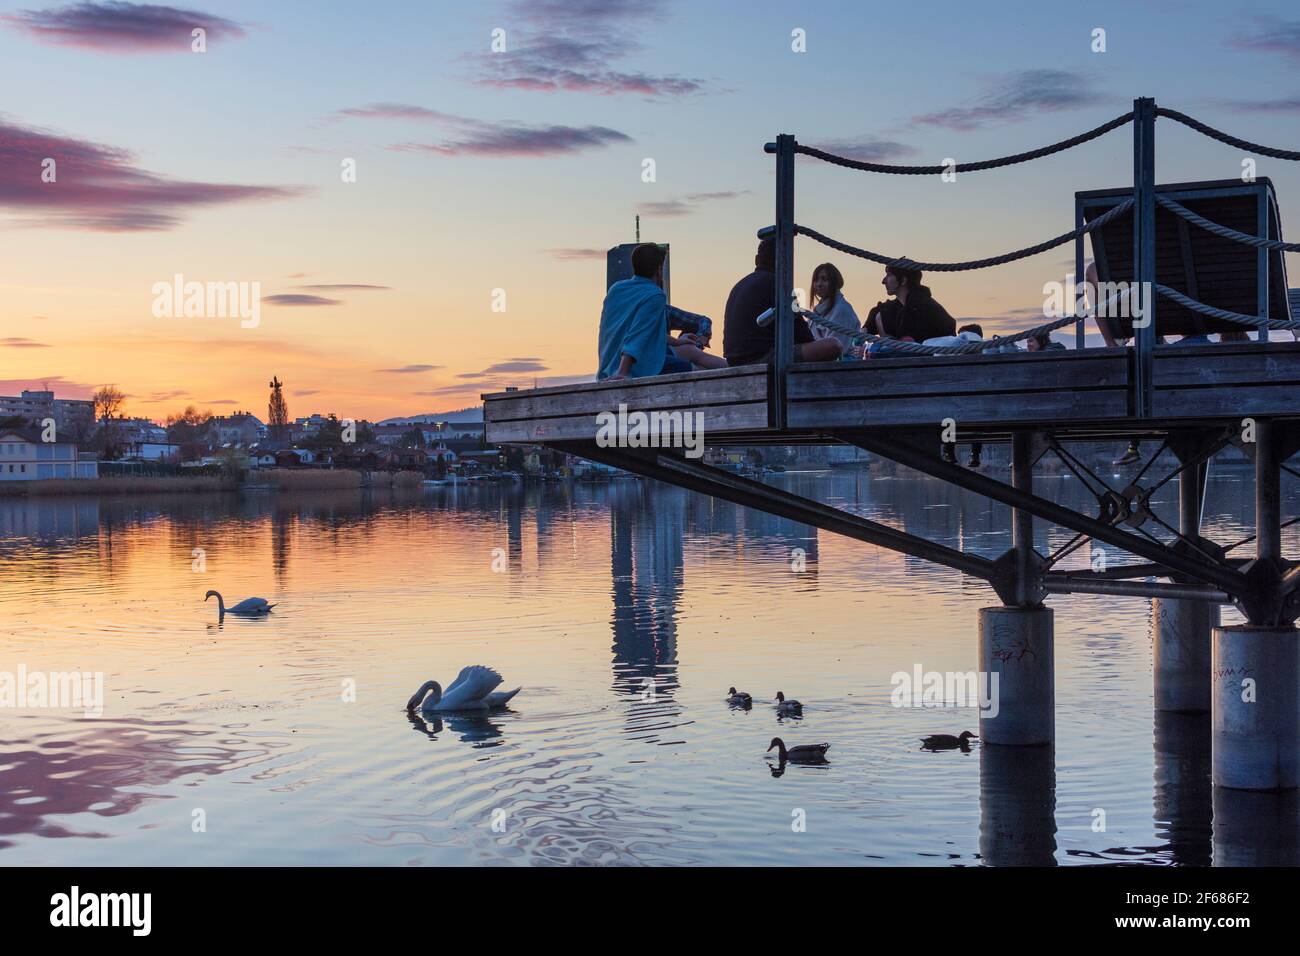 Wien, Vienna: I giovani su una piattaforma in una festa sopra il lago di ossbow Alte Donau (Vecchio Danubio) al tramonto fiero, gli edifici di Donaucity, DC Tower 1, Coro Foto Stock